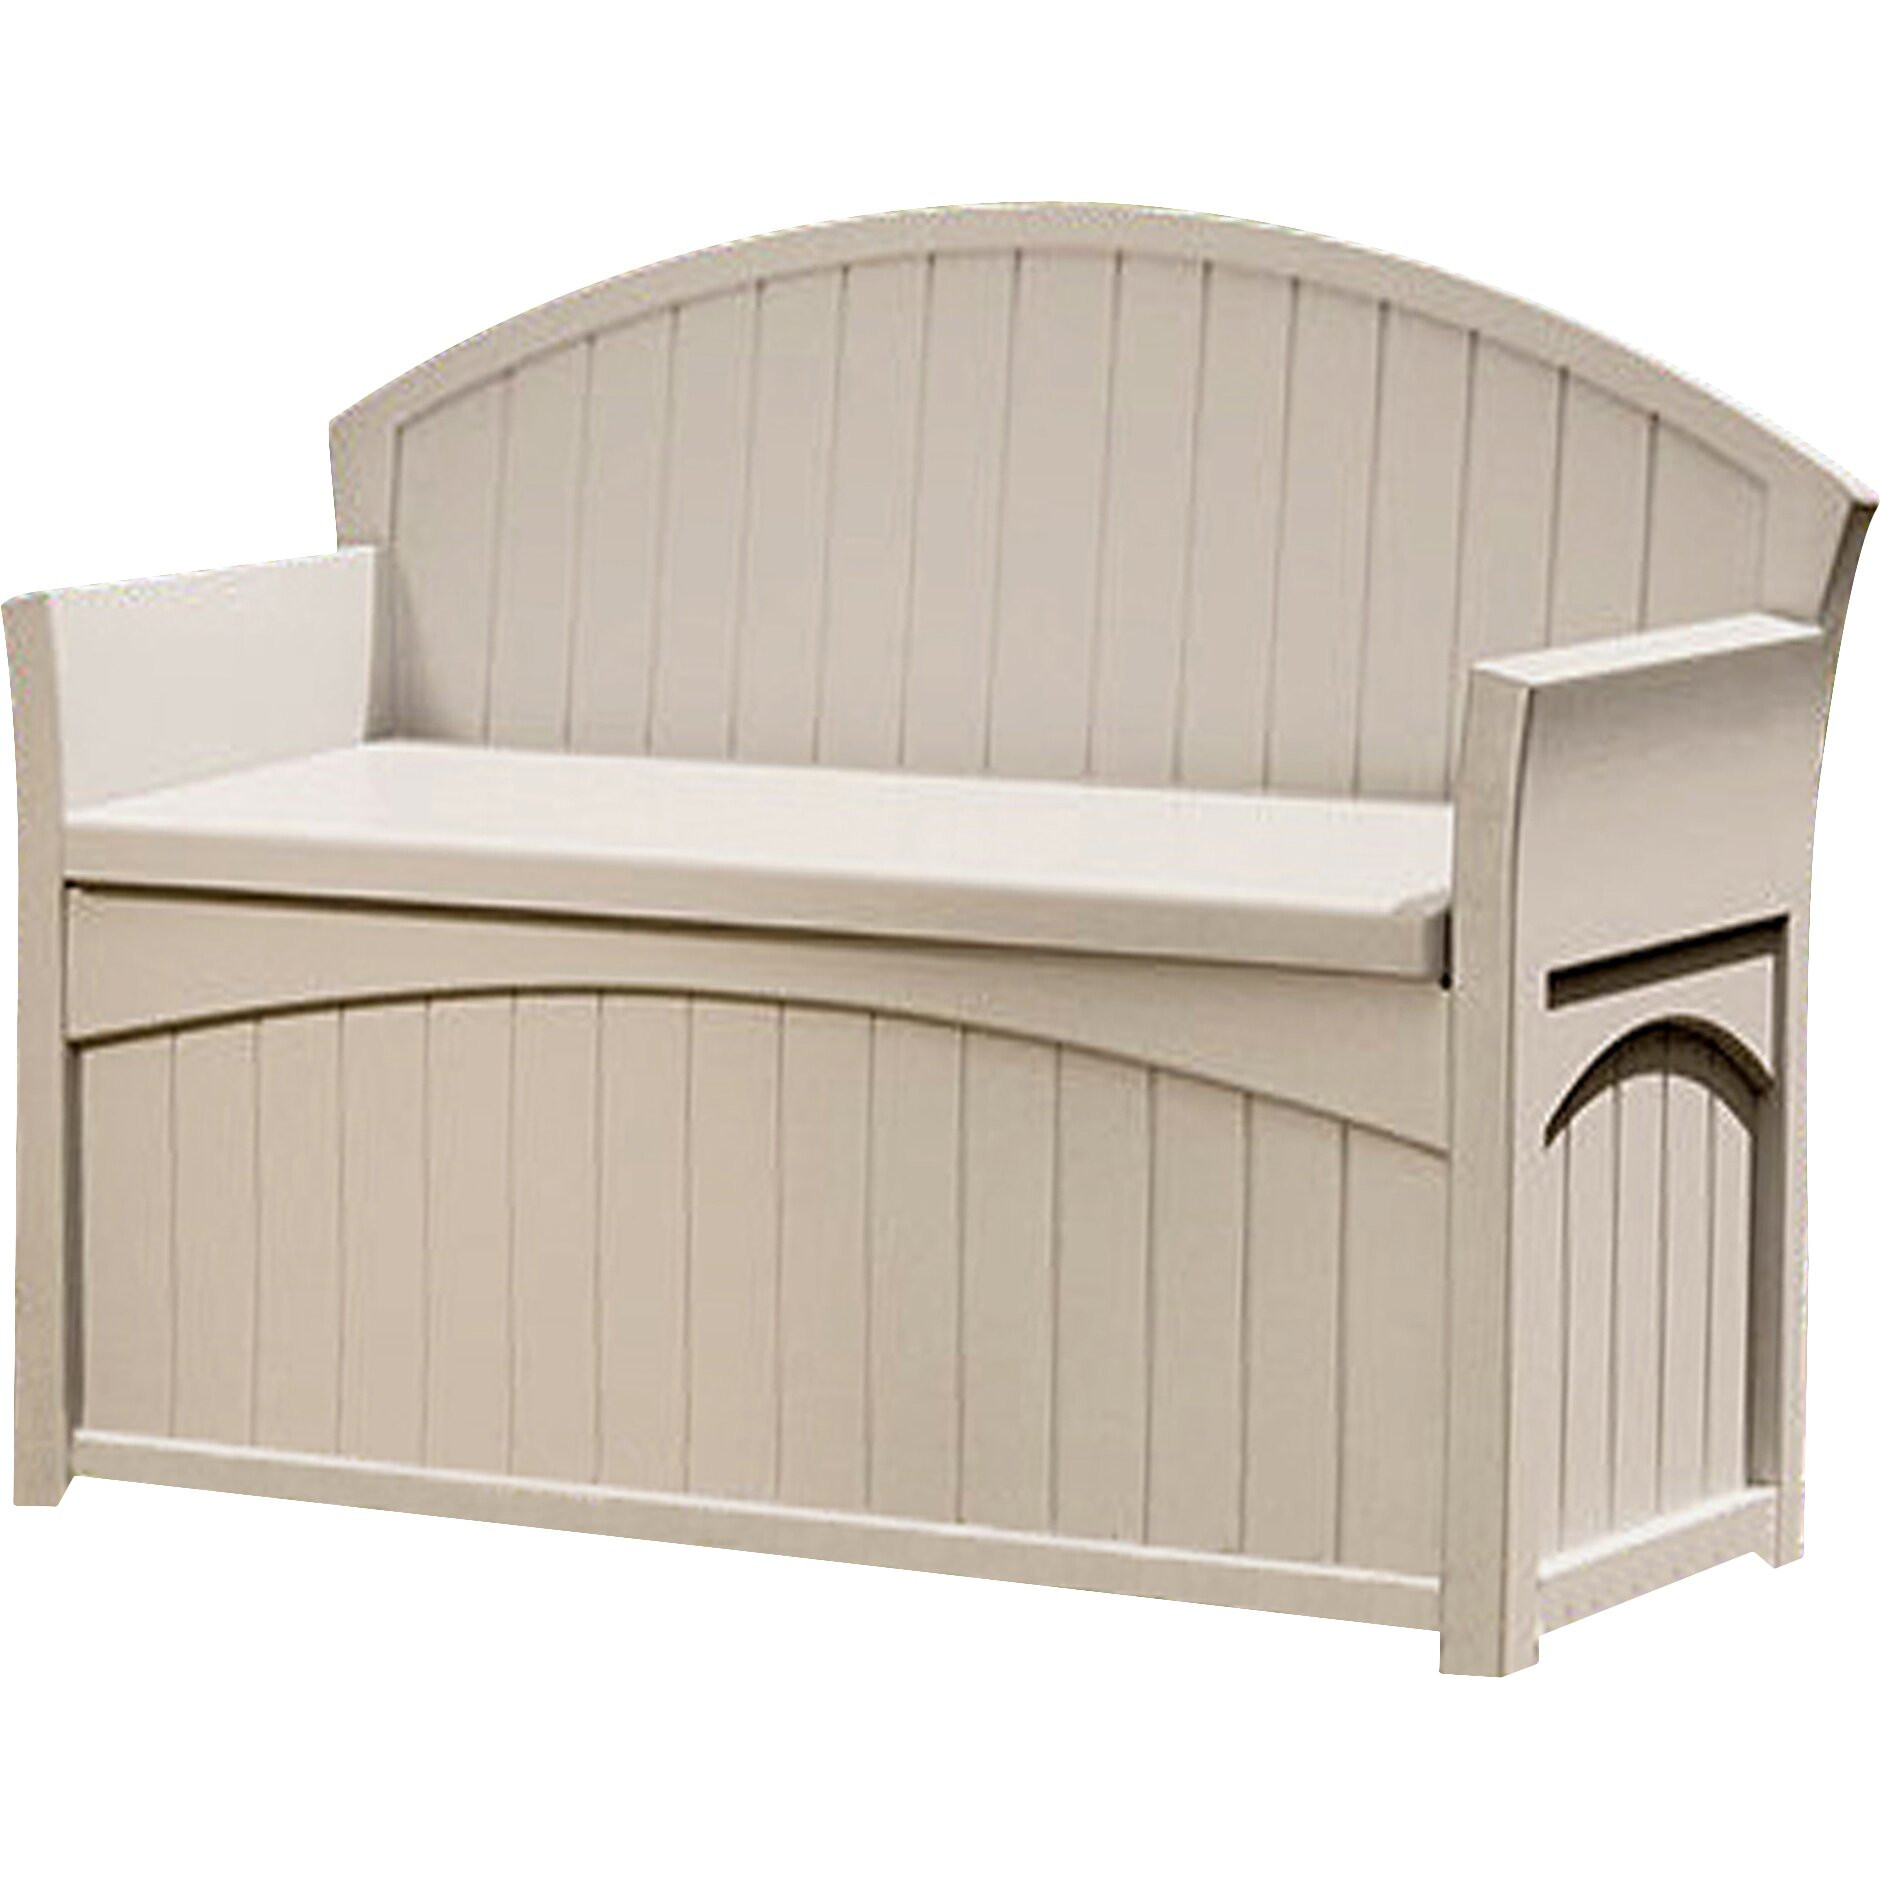 Suncast Storage Bench
 Suncast 2 Seater Plastic Storage Bench & Reviews